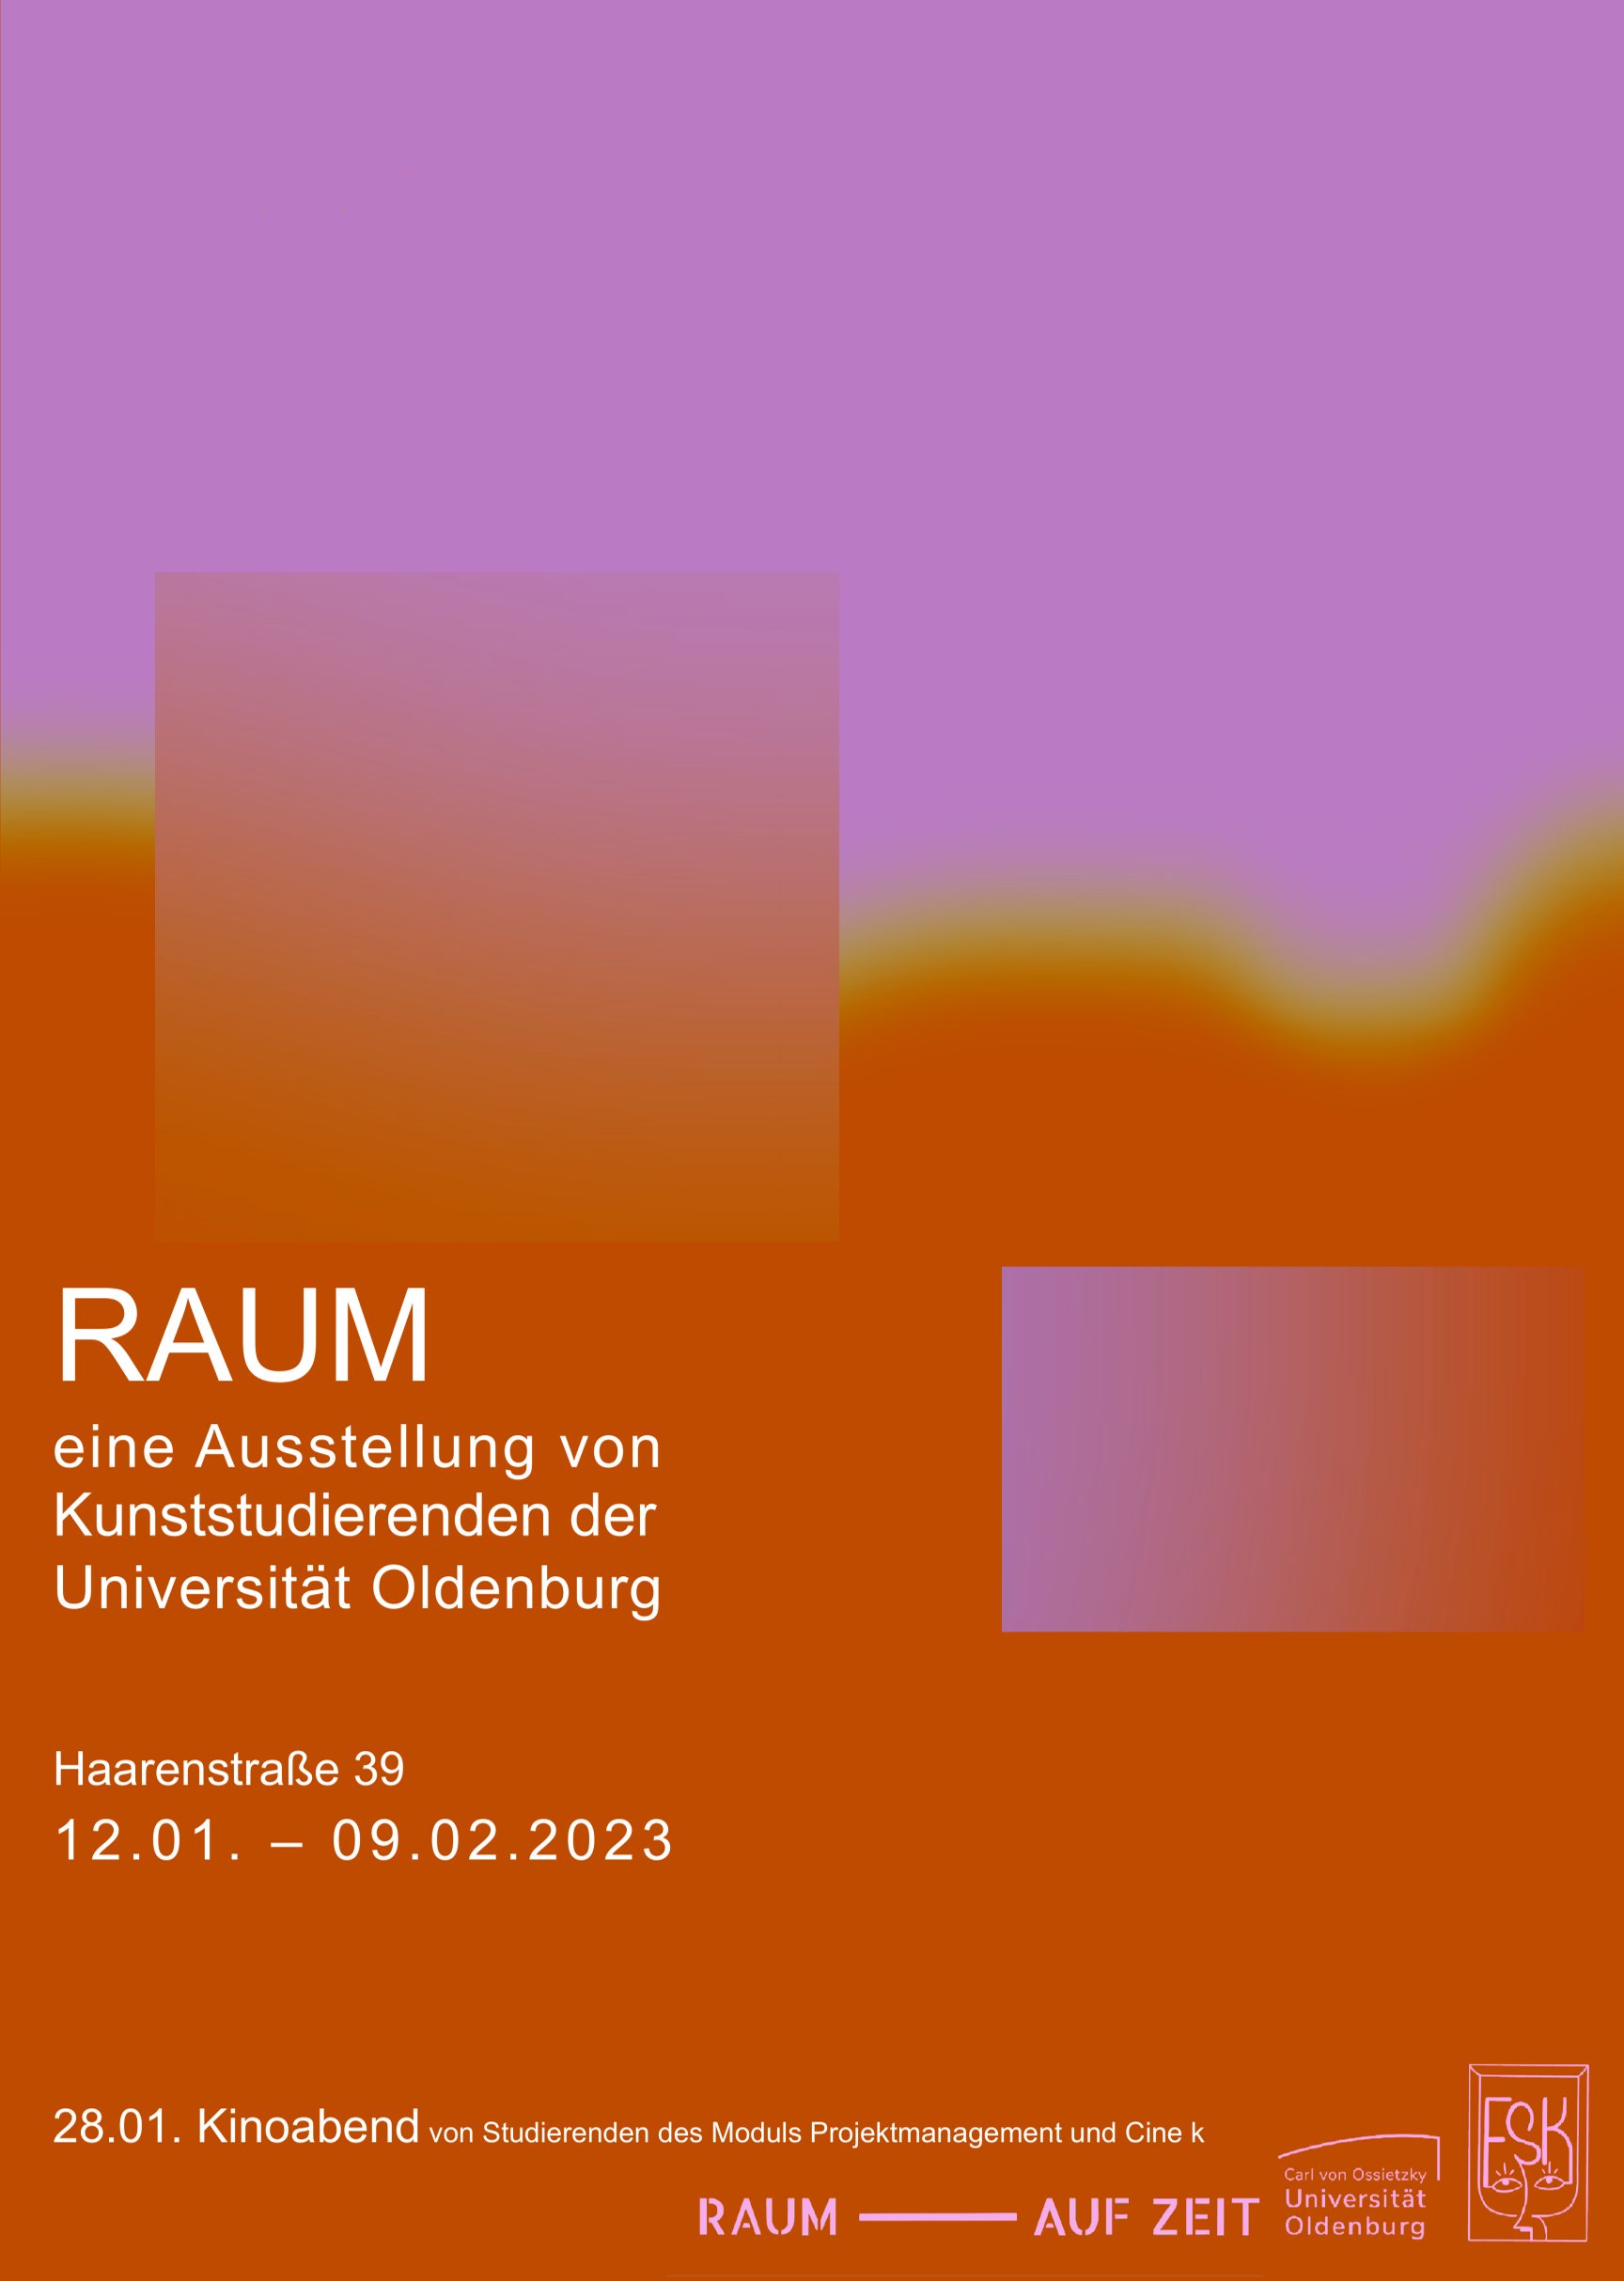 Plakat Ausstellung RAUM Universität Oldenburg